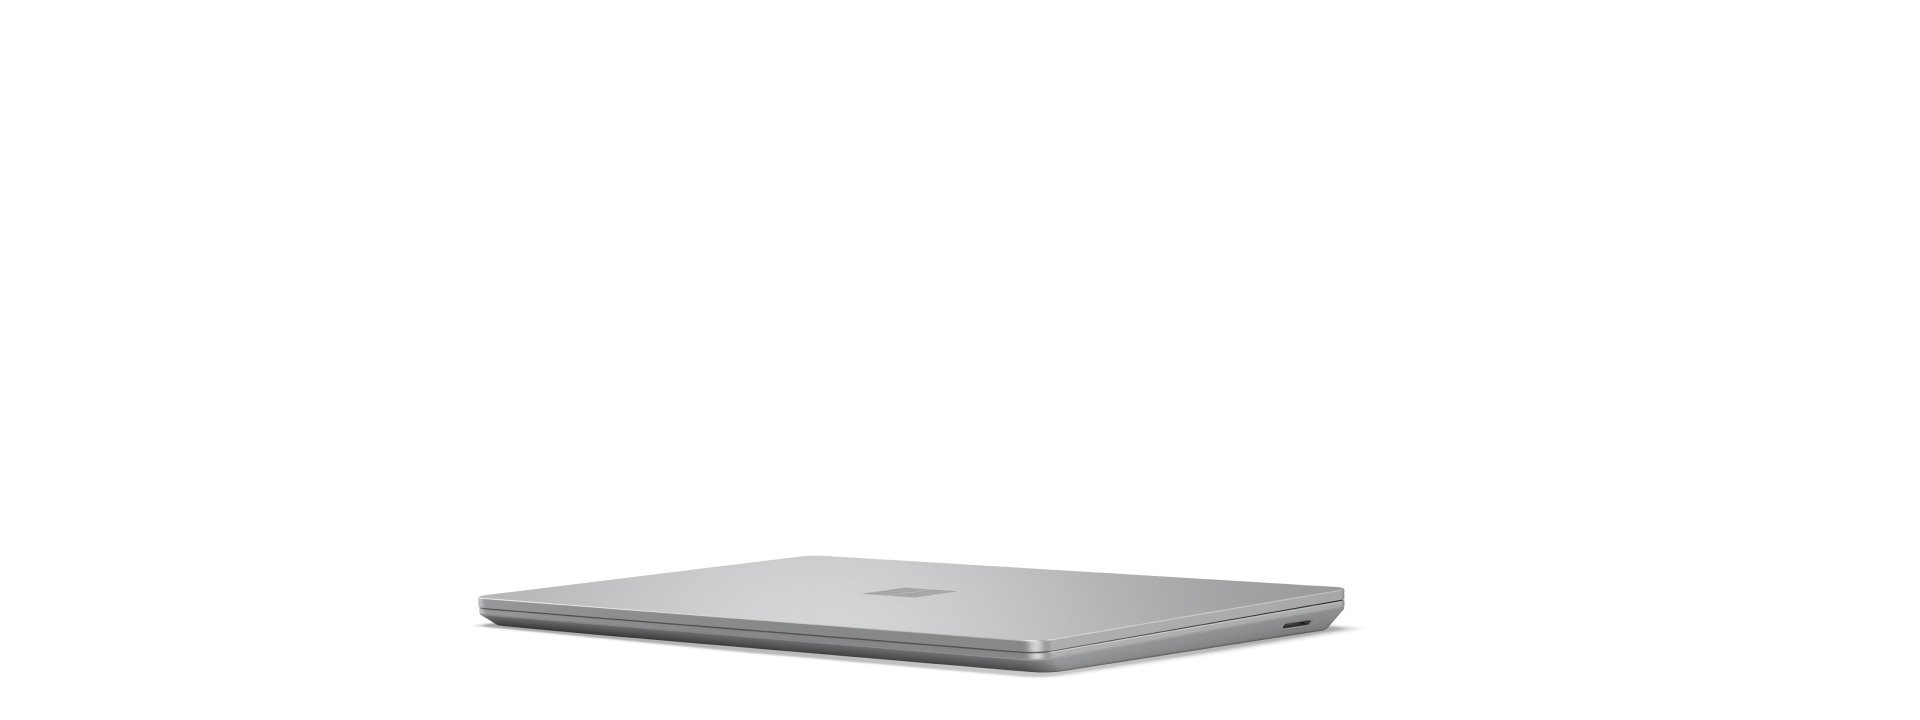 Fotogramma iniziale di un dispositivo Surface Laptop Go 3 in rotazione che si apre e si chiude, mostrando tutti i suoi lati.